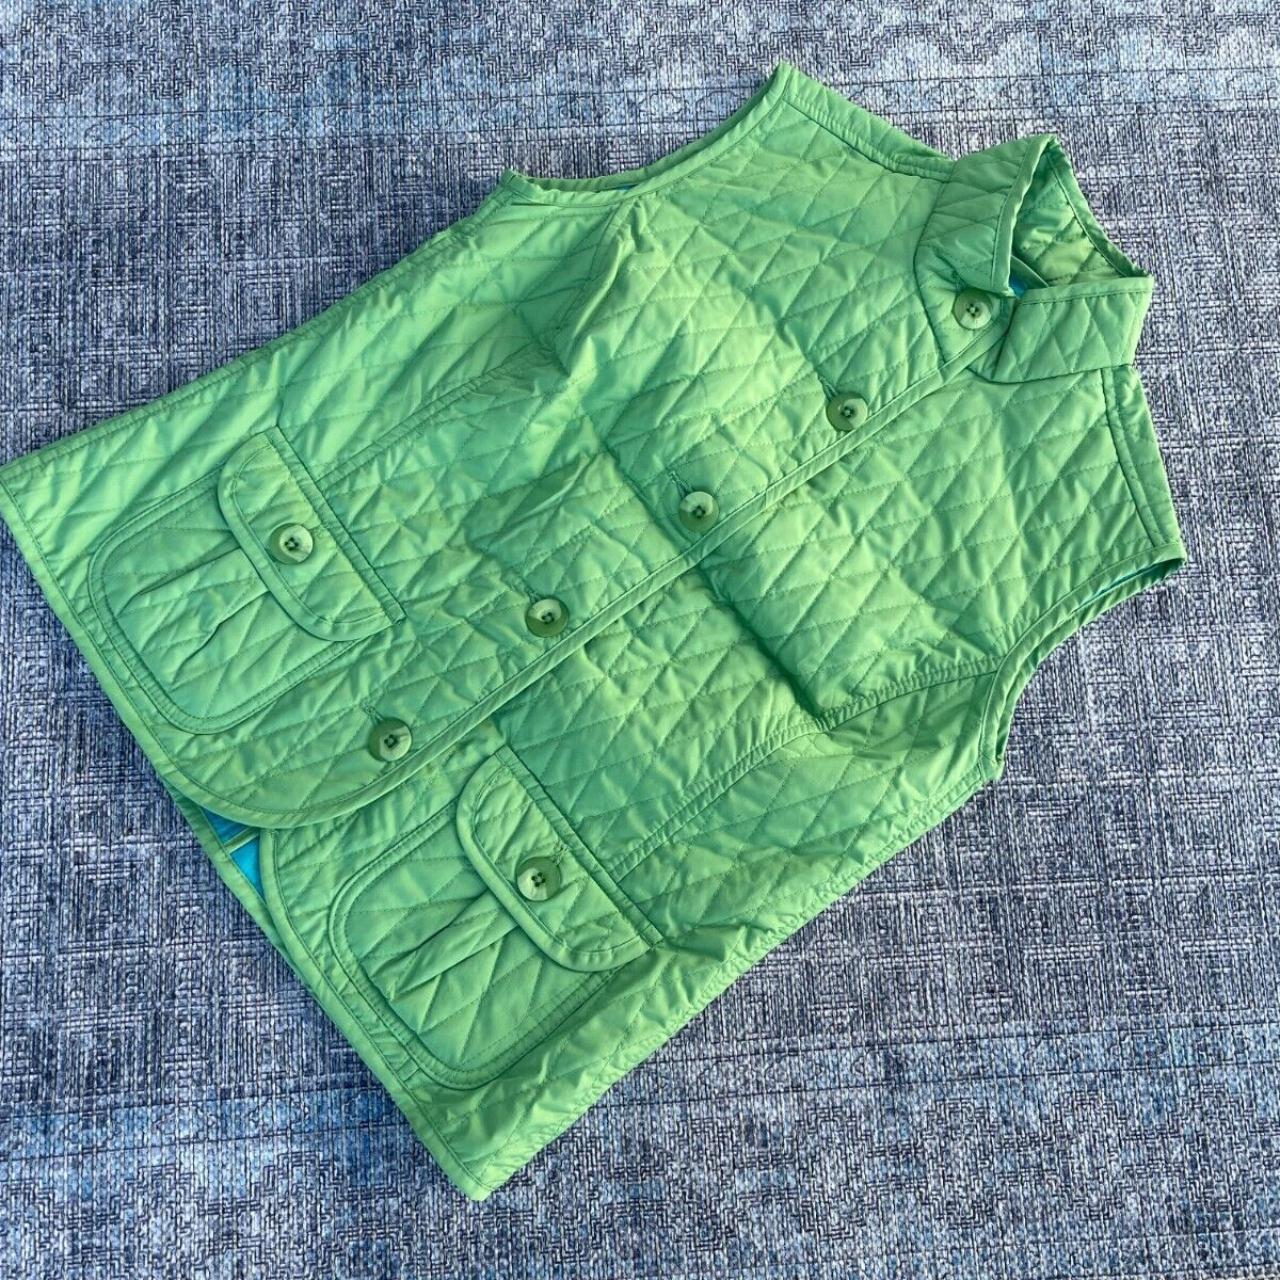 Van Heusen Women Vest Jacket Green Quilt Light... - Depop